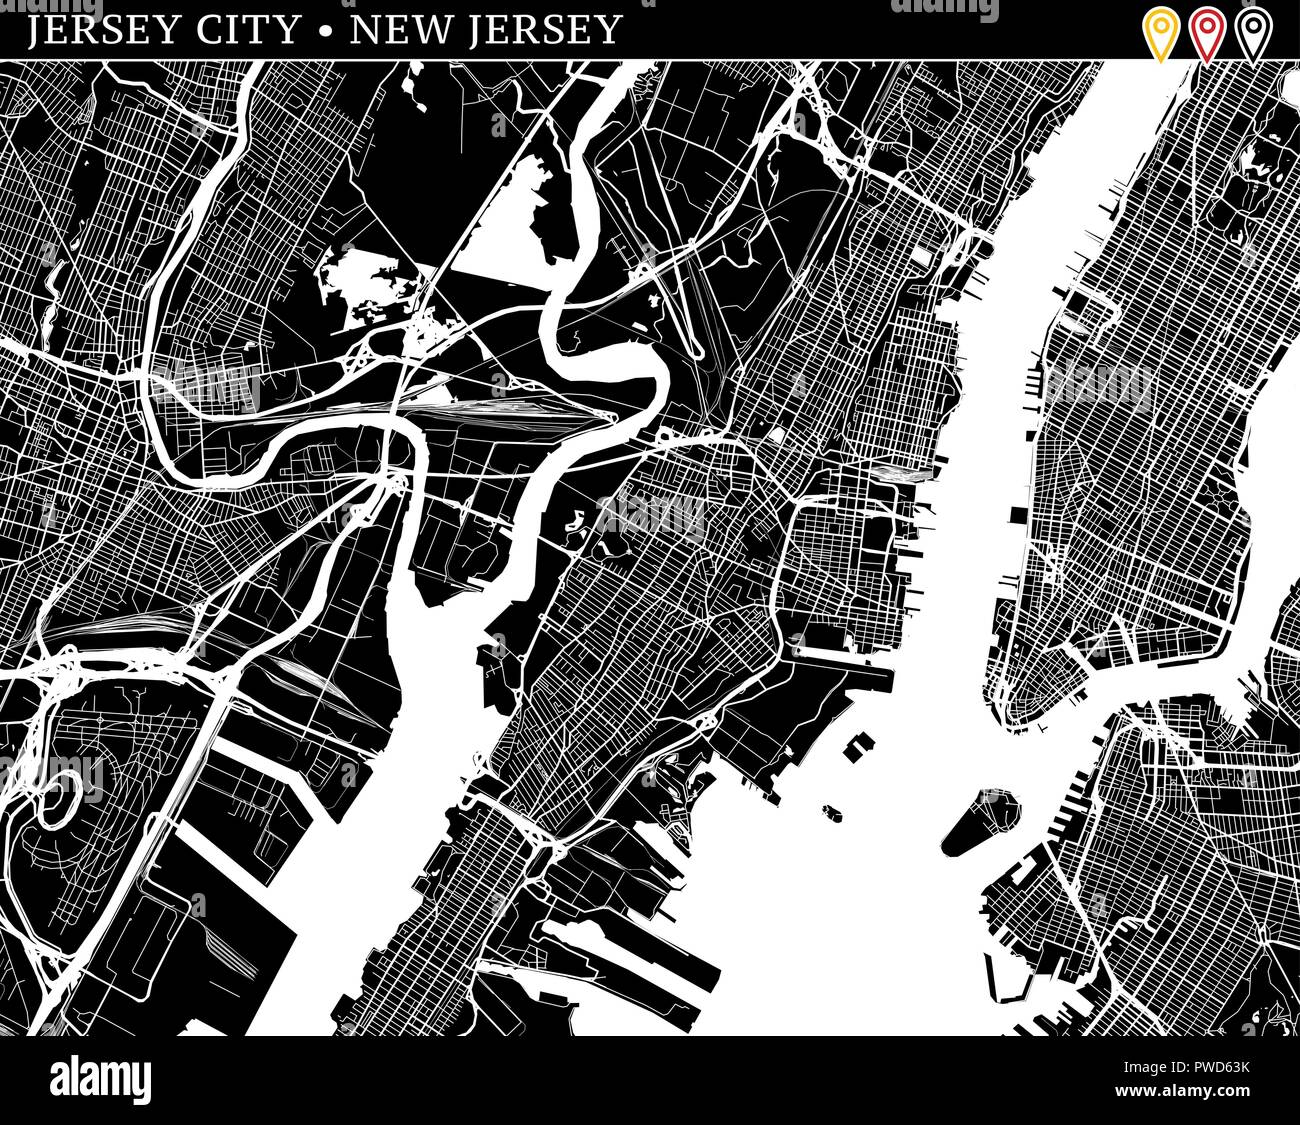 Simple carte de Jersey City, New Jersey, USA. Version noir et blanc pour l'assainissement de l'horizons et impressions. Cette carte de Jersey City contient trois marqueurs w Illustration de Vecteur